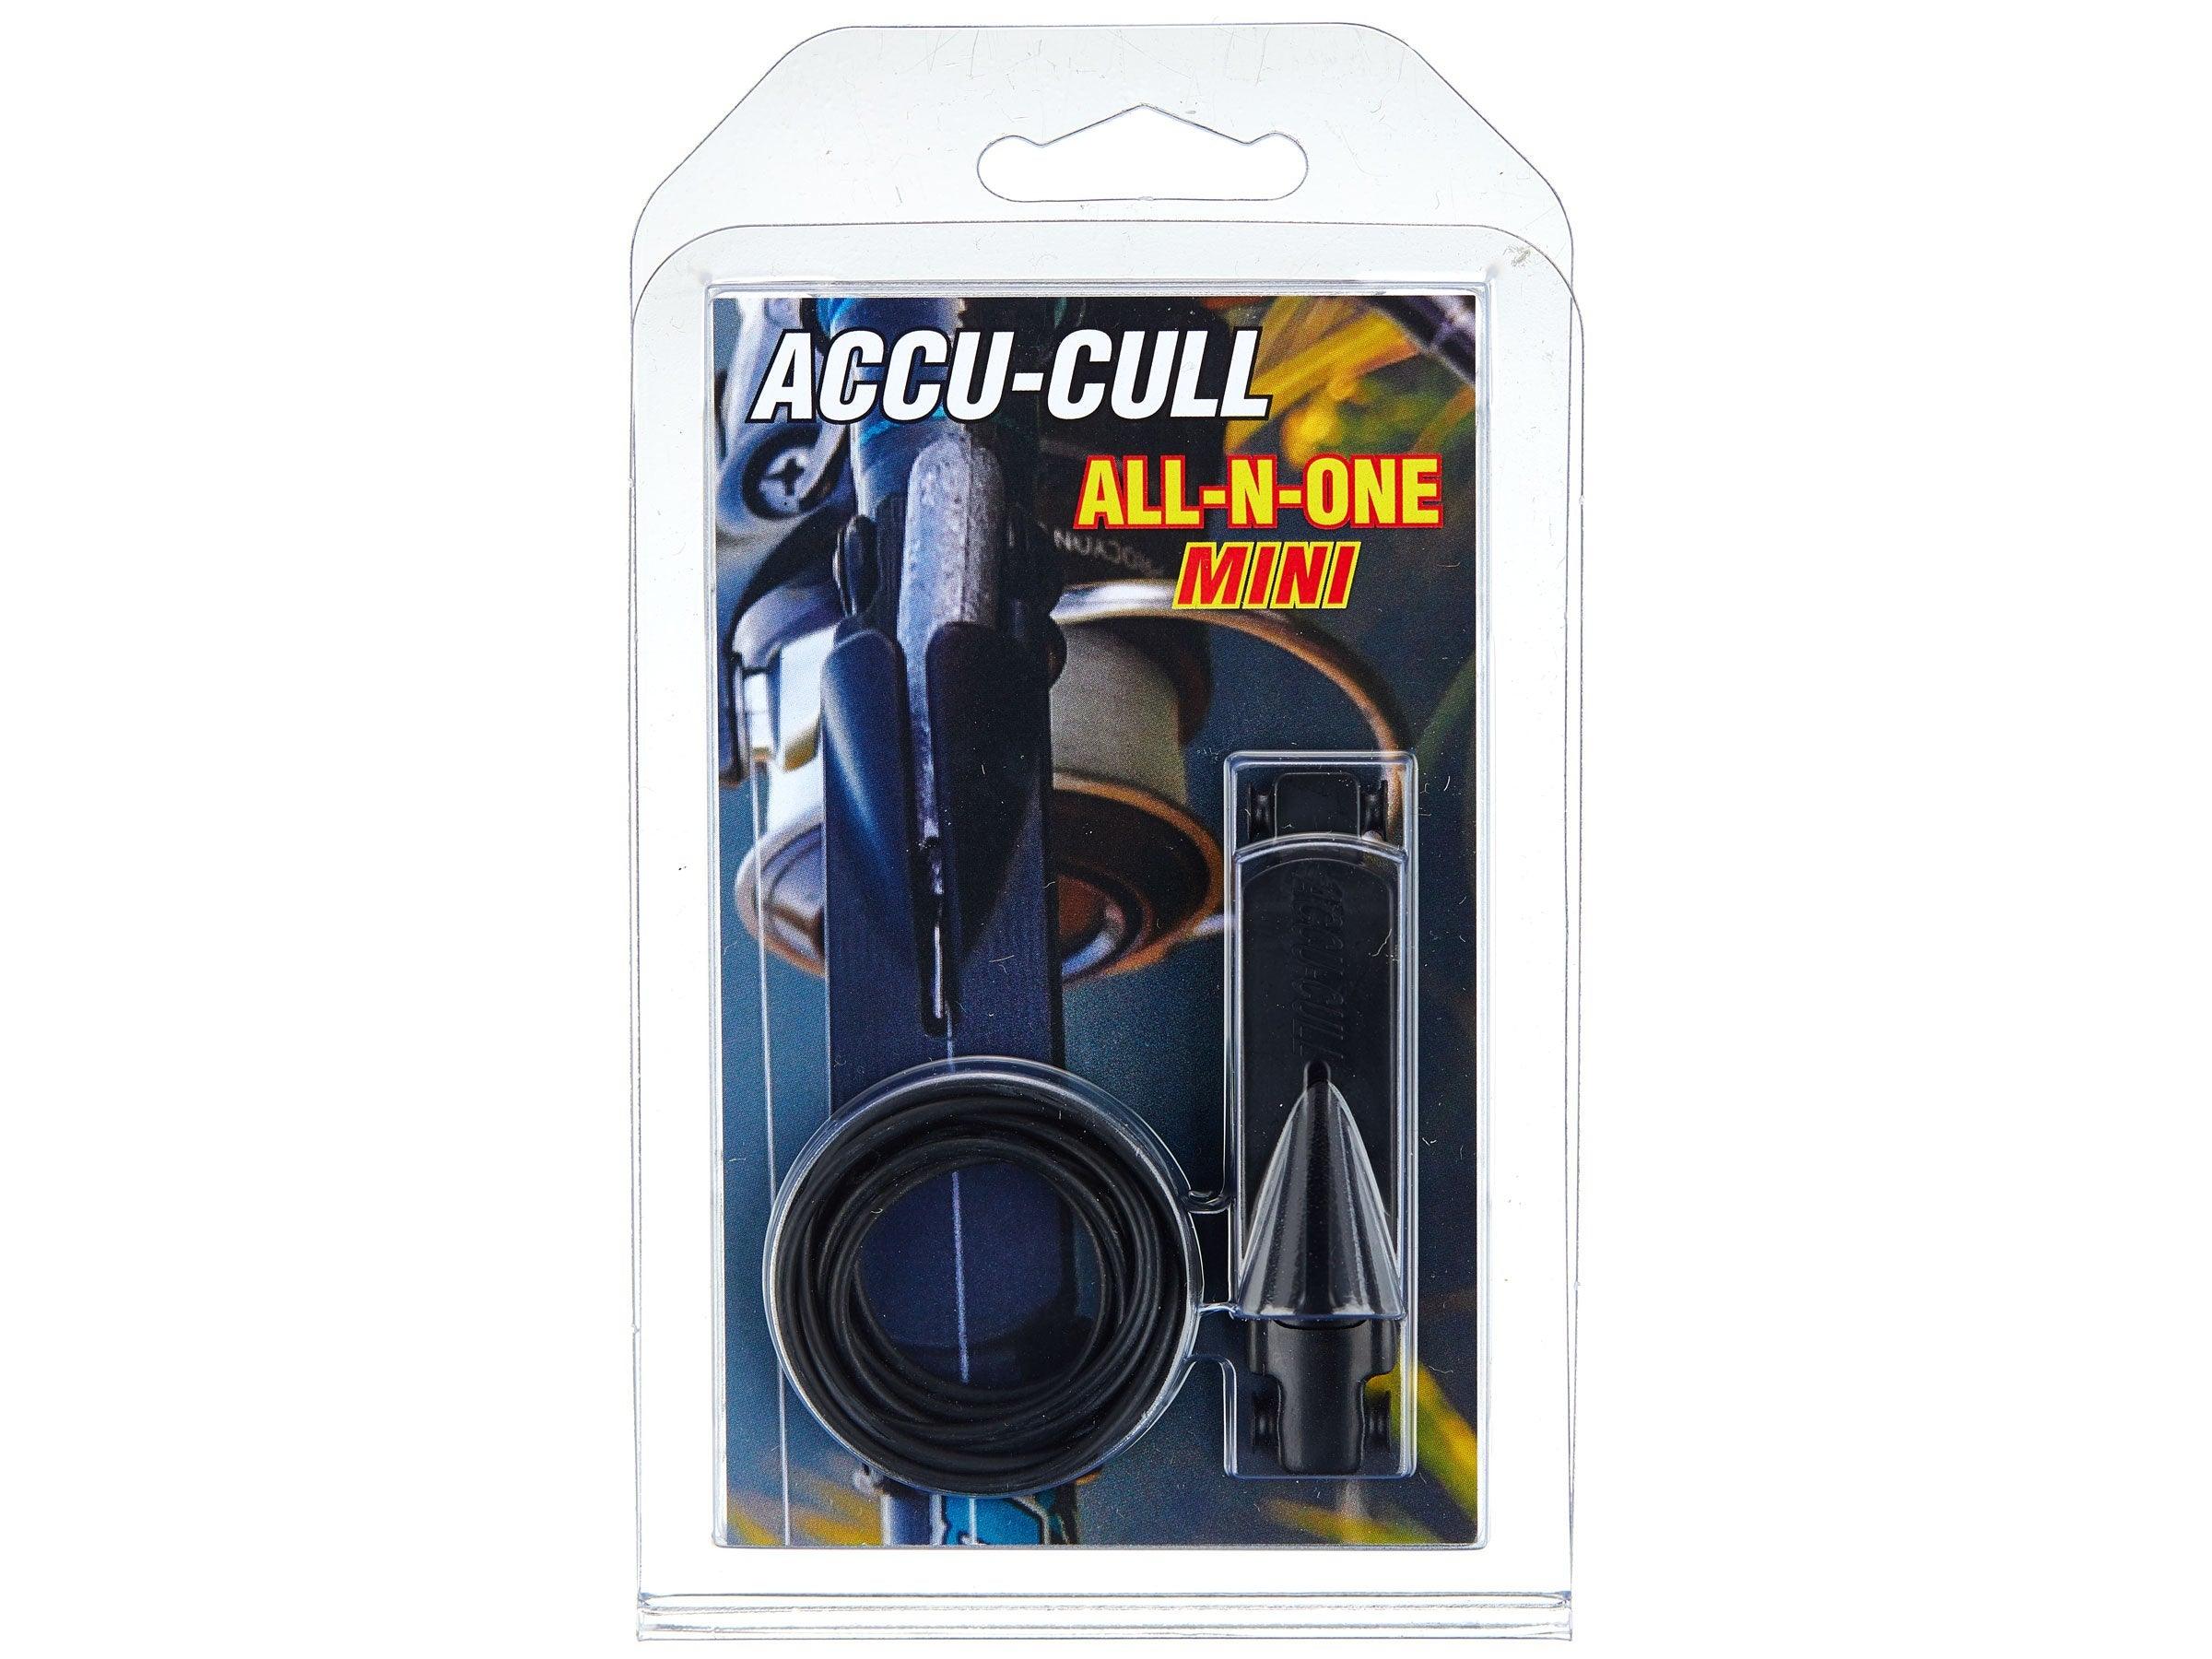 Accu-Cull Digital Scale w/ Mini Grip